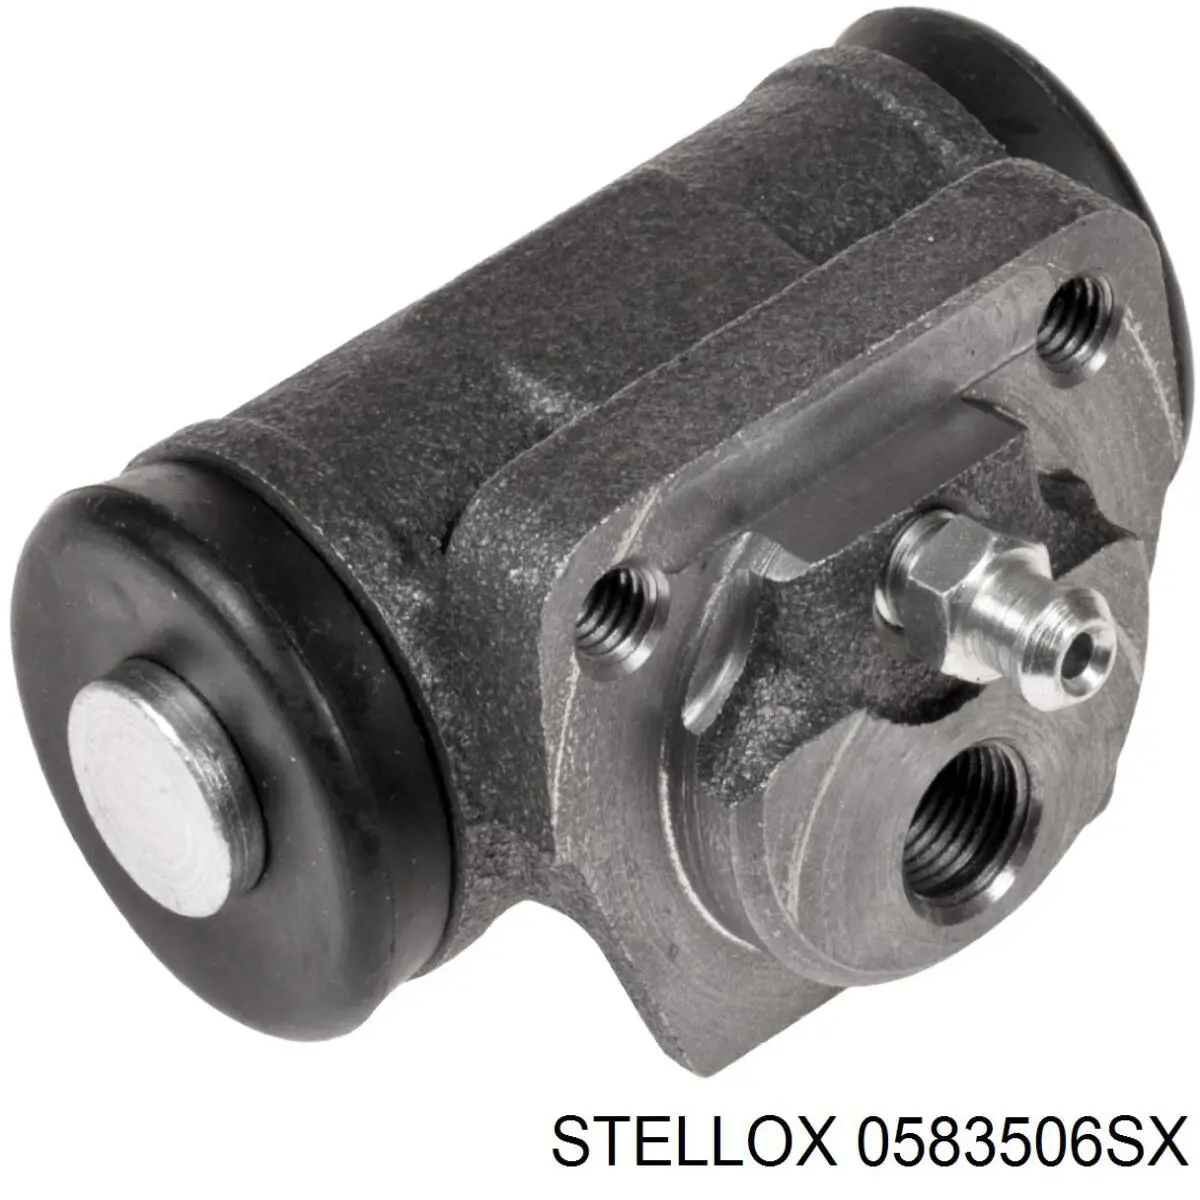 05-83506-SX Stellox cilindro de freno de rueda trasero